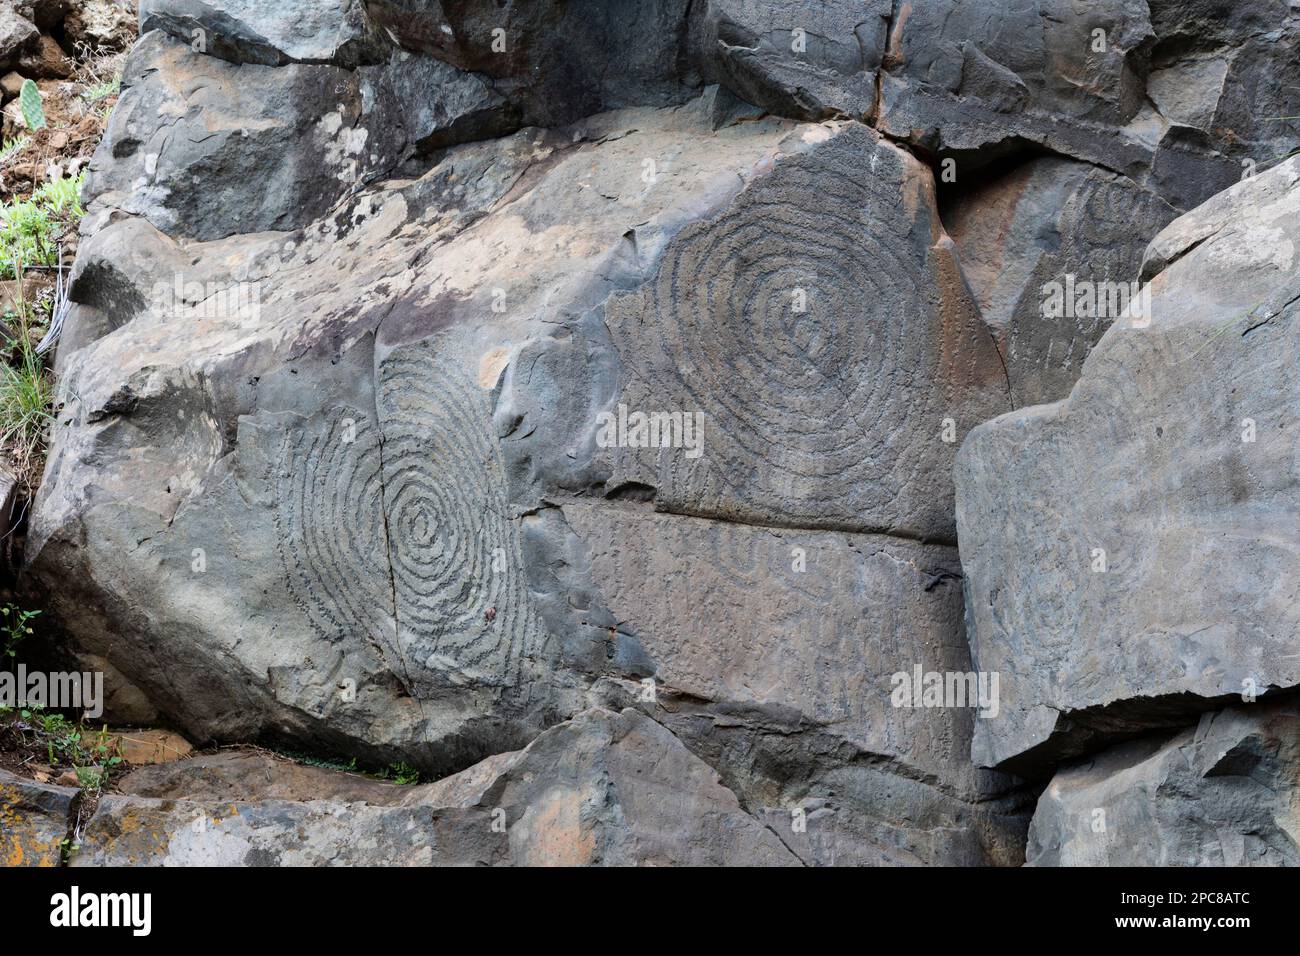 Rock inscriptions, El Cementerio in the Barranco las Canales, El Paso, La Palma, Spain Stock Photo